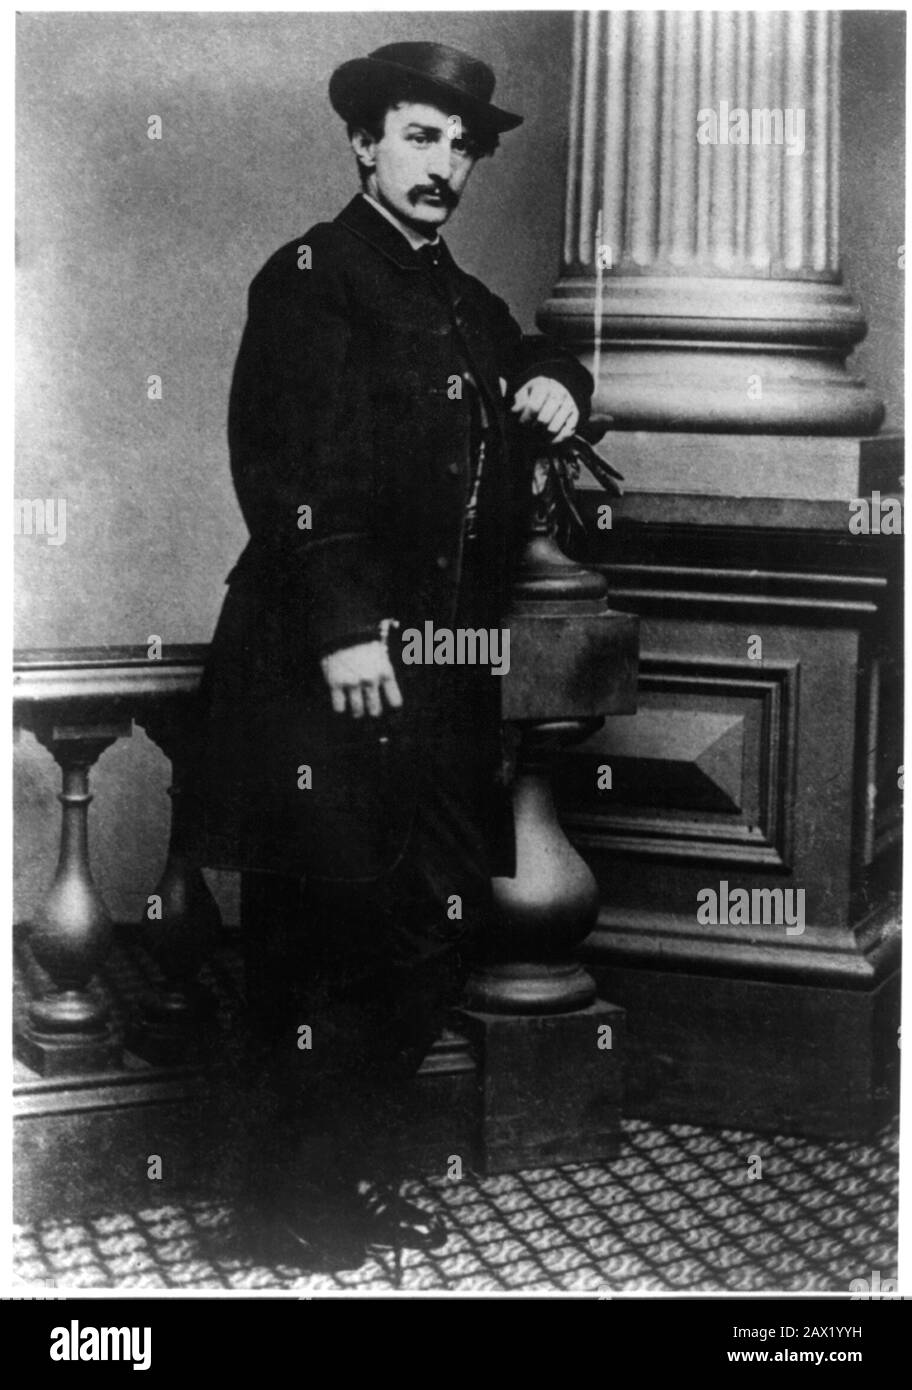 1865 : Der Schauspieler John Wilkes Booth (* um 1835-1865 in Washington, USA; Präsident ABRAHAM LINCOLN ( Big South Fork, KY, 1809) - Presidente della Repubblica - Stati Uniti - USA - Ritratto - Porträt - Cravatta - Krawatte - Kragen - Colletto - Abramo - Assassinio - Mörder - Assassinio - Omicidio - Baffi - Schnurrbart - Hut - cappello -- Archivio GBB Stockfoto